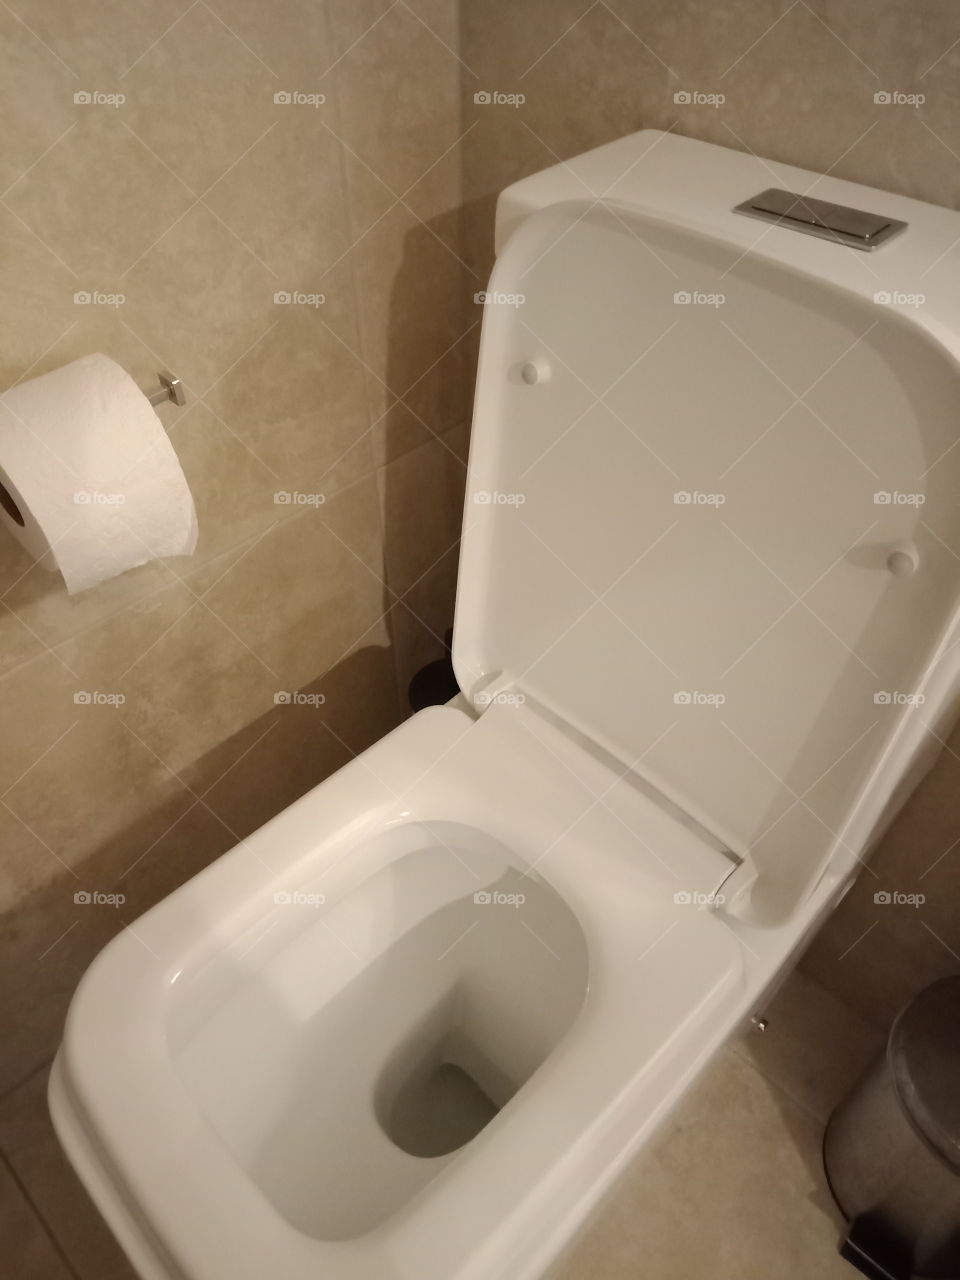 a modern toilet